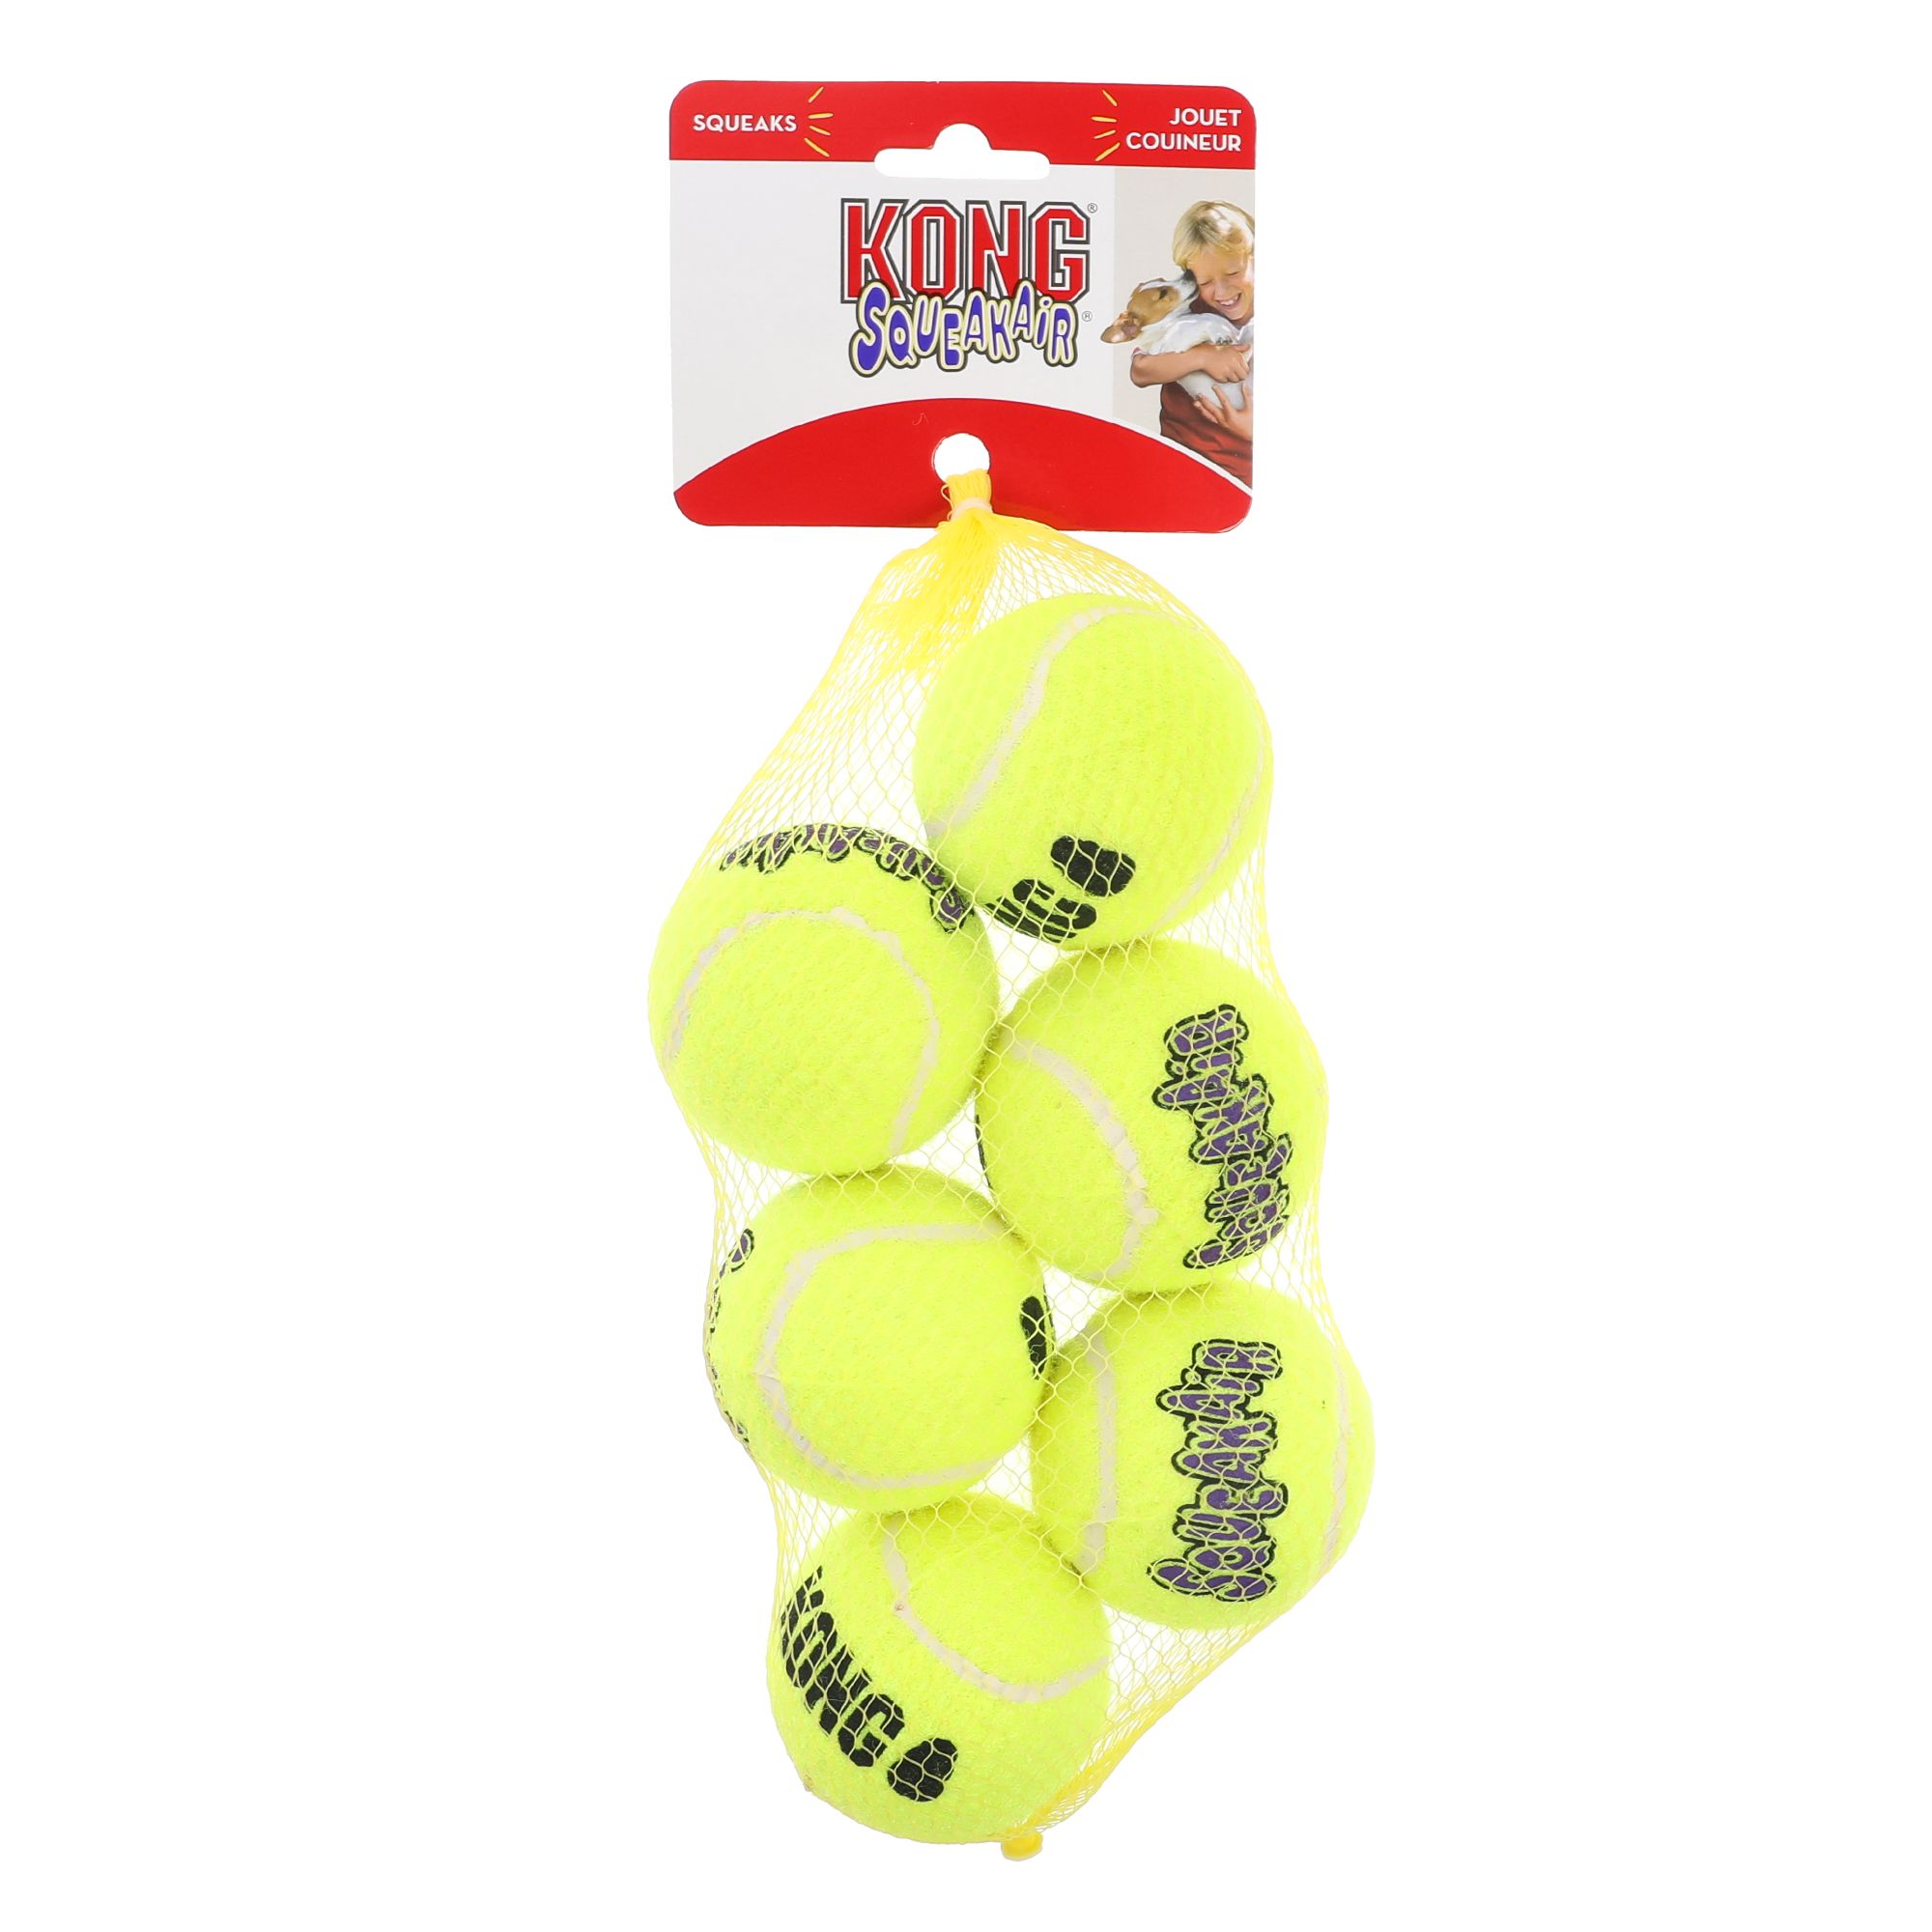 Kong Squeakair Balls Medium 6 Pack